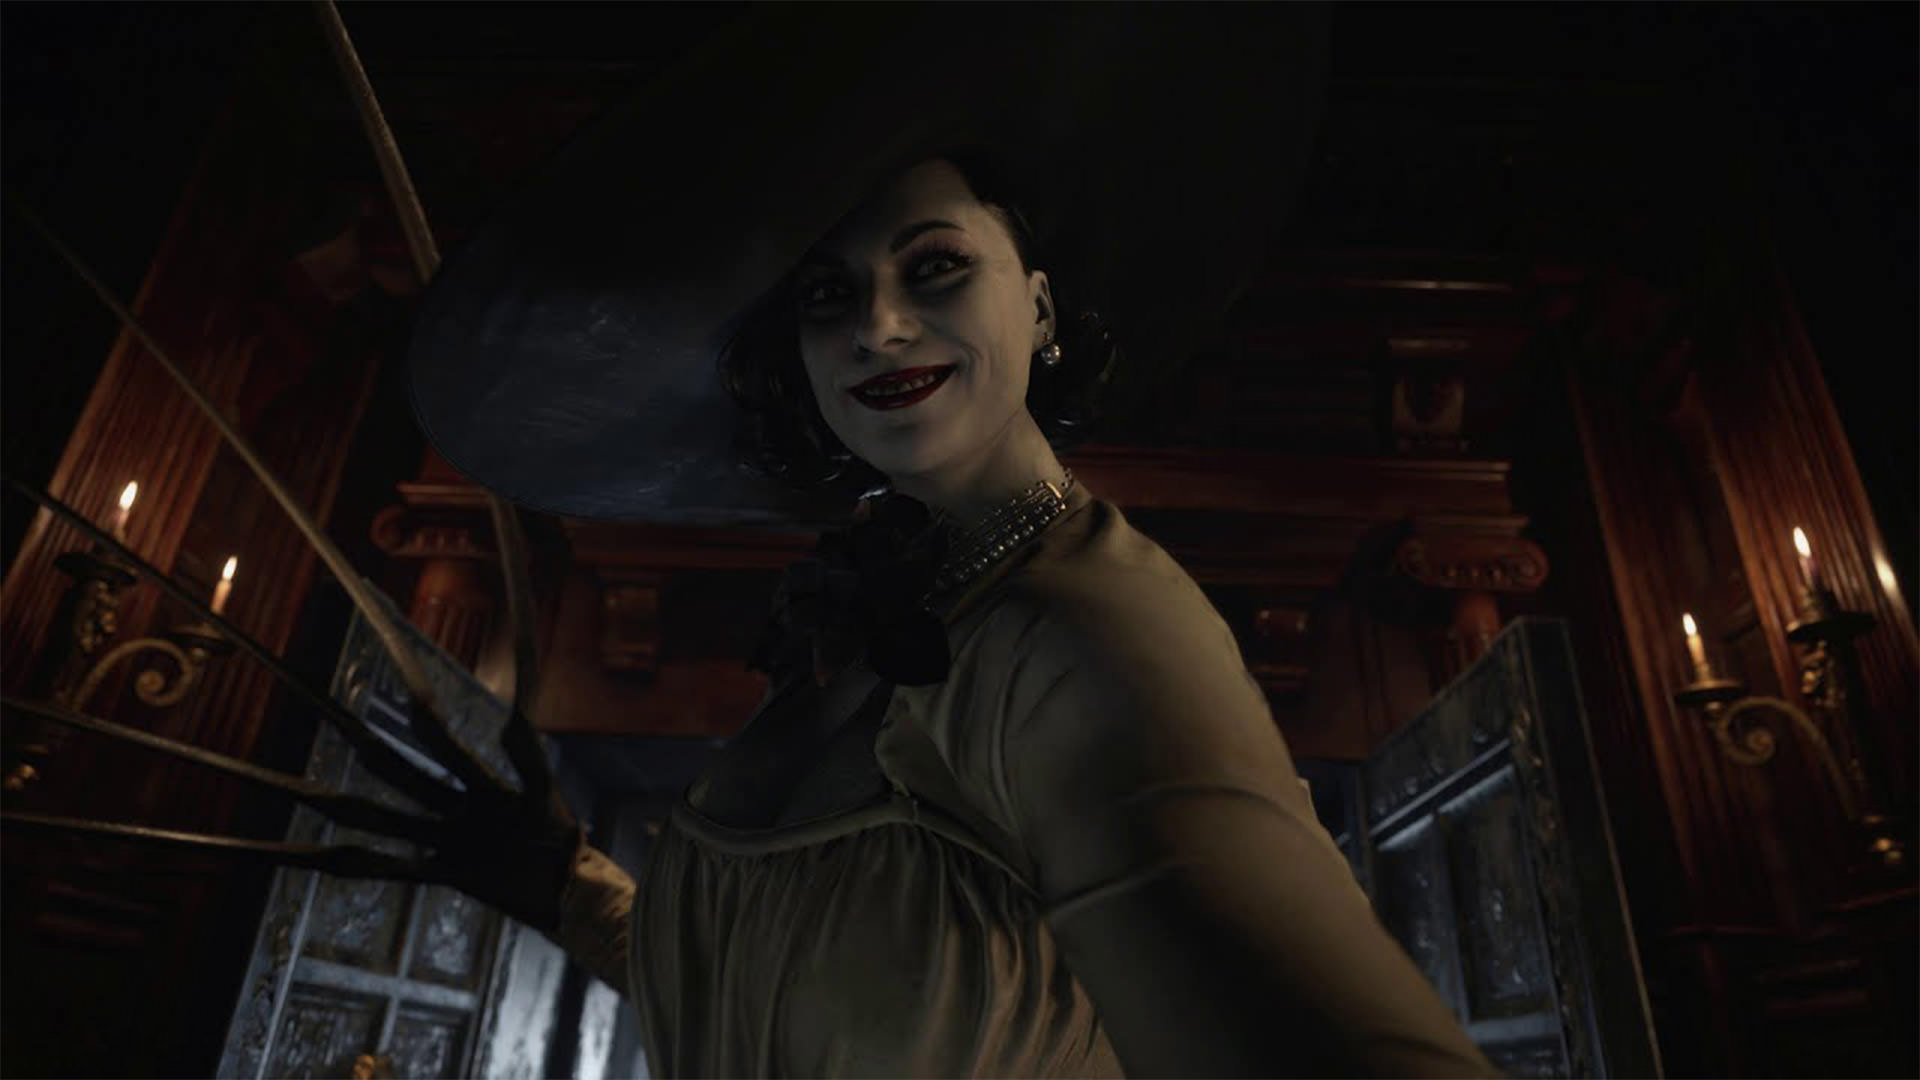 انتشار تصویر بازیگر لیدی دیمیتریس بازی Resident Evil 8 در استودیو موشن کپچر